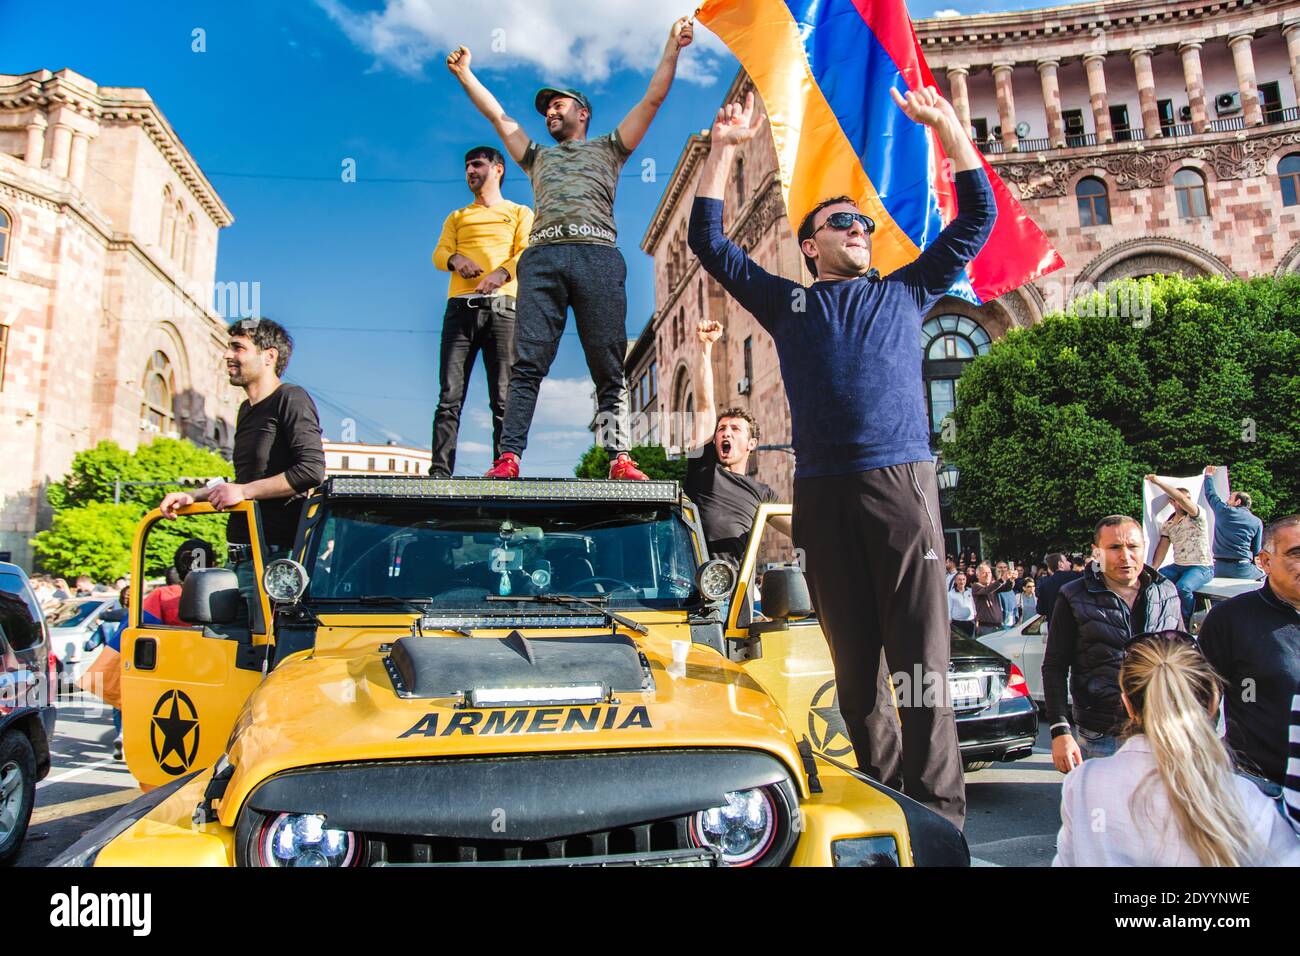 Arménie, Erevan, 23 avril 2018 - Groupe de gars debout sur une grande voiture jaune avec drapeau arménien pendant la Révolution de velours Banque D'Images